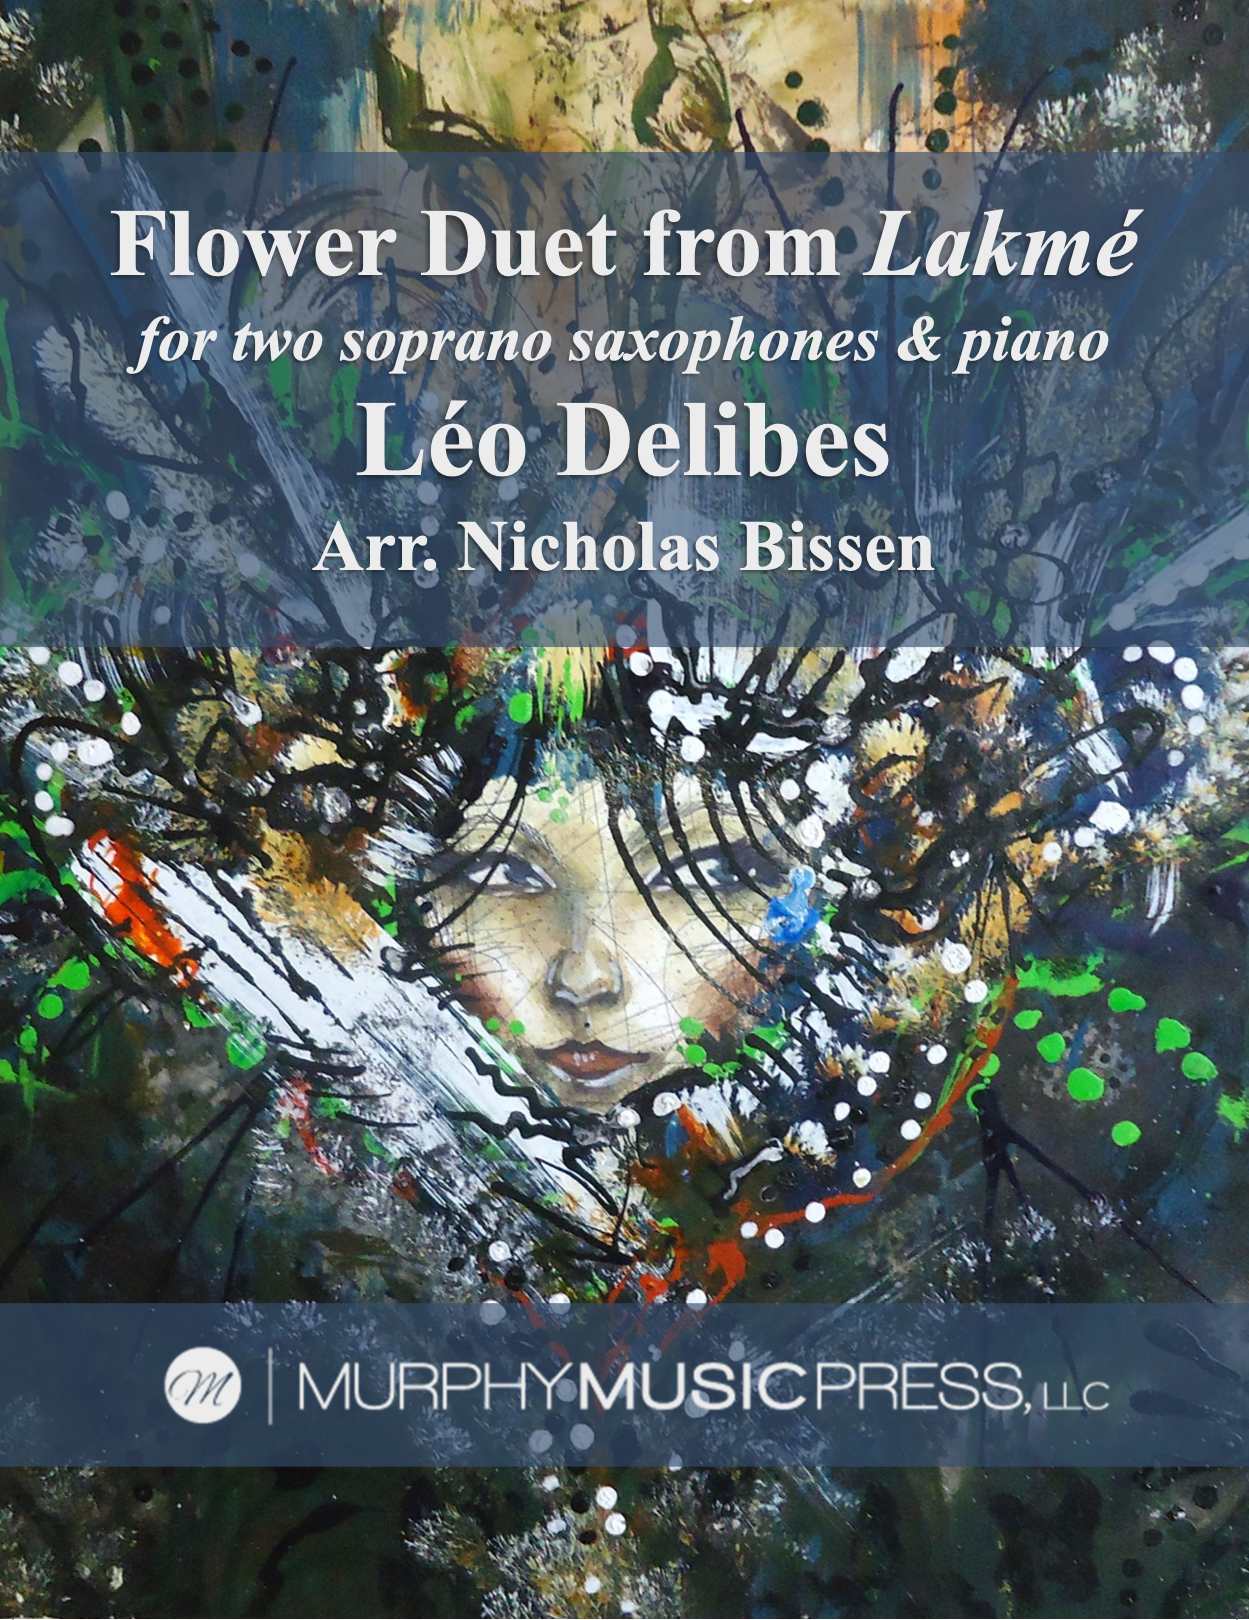 The Flower Duet by arr. Nicholas Bissen